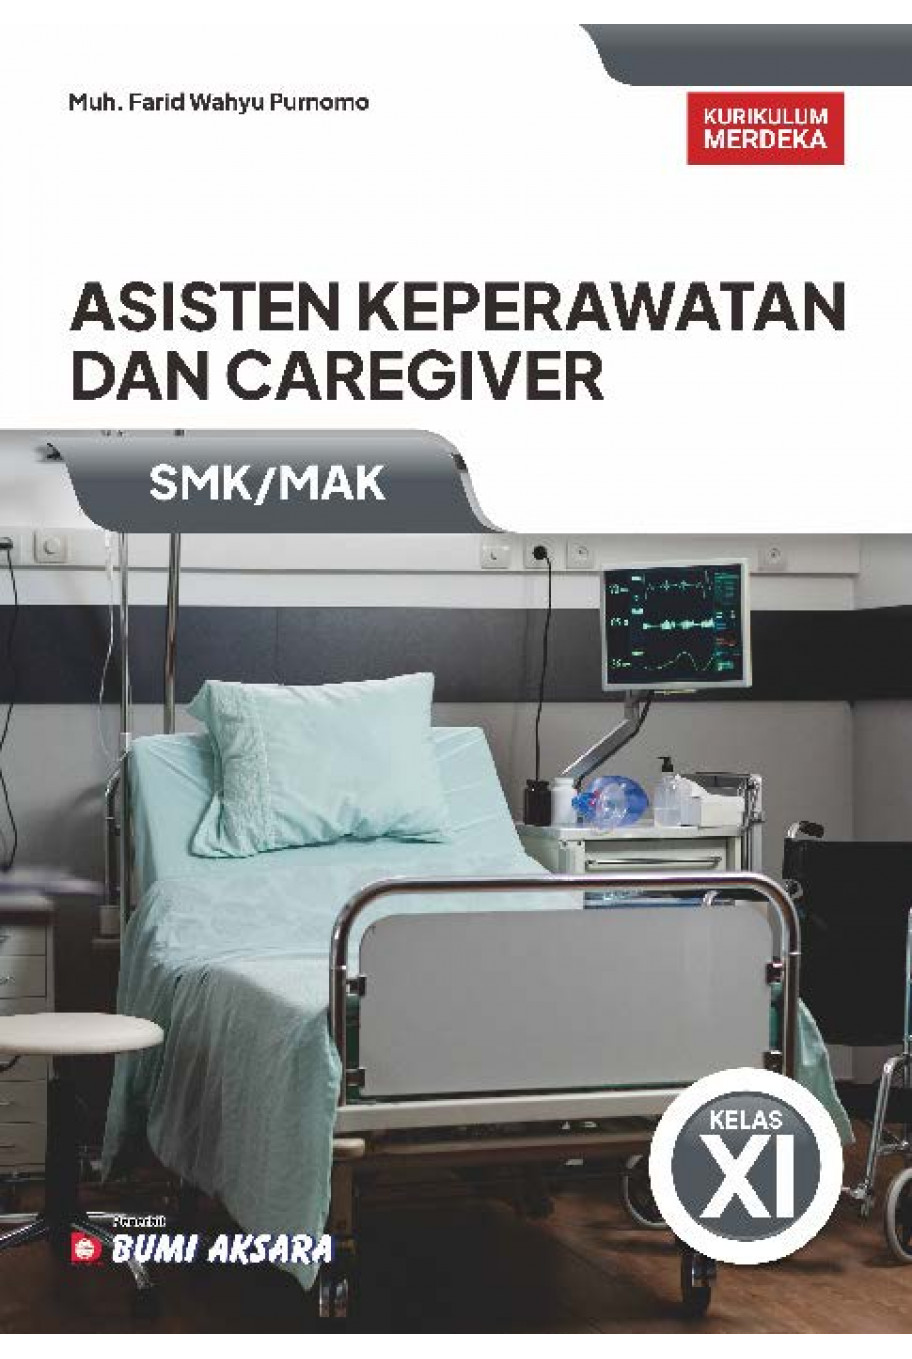 Asisten Keperawatan dan Caregiver SMK/MAK Kelas XI